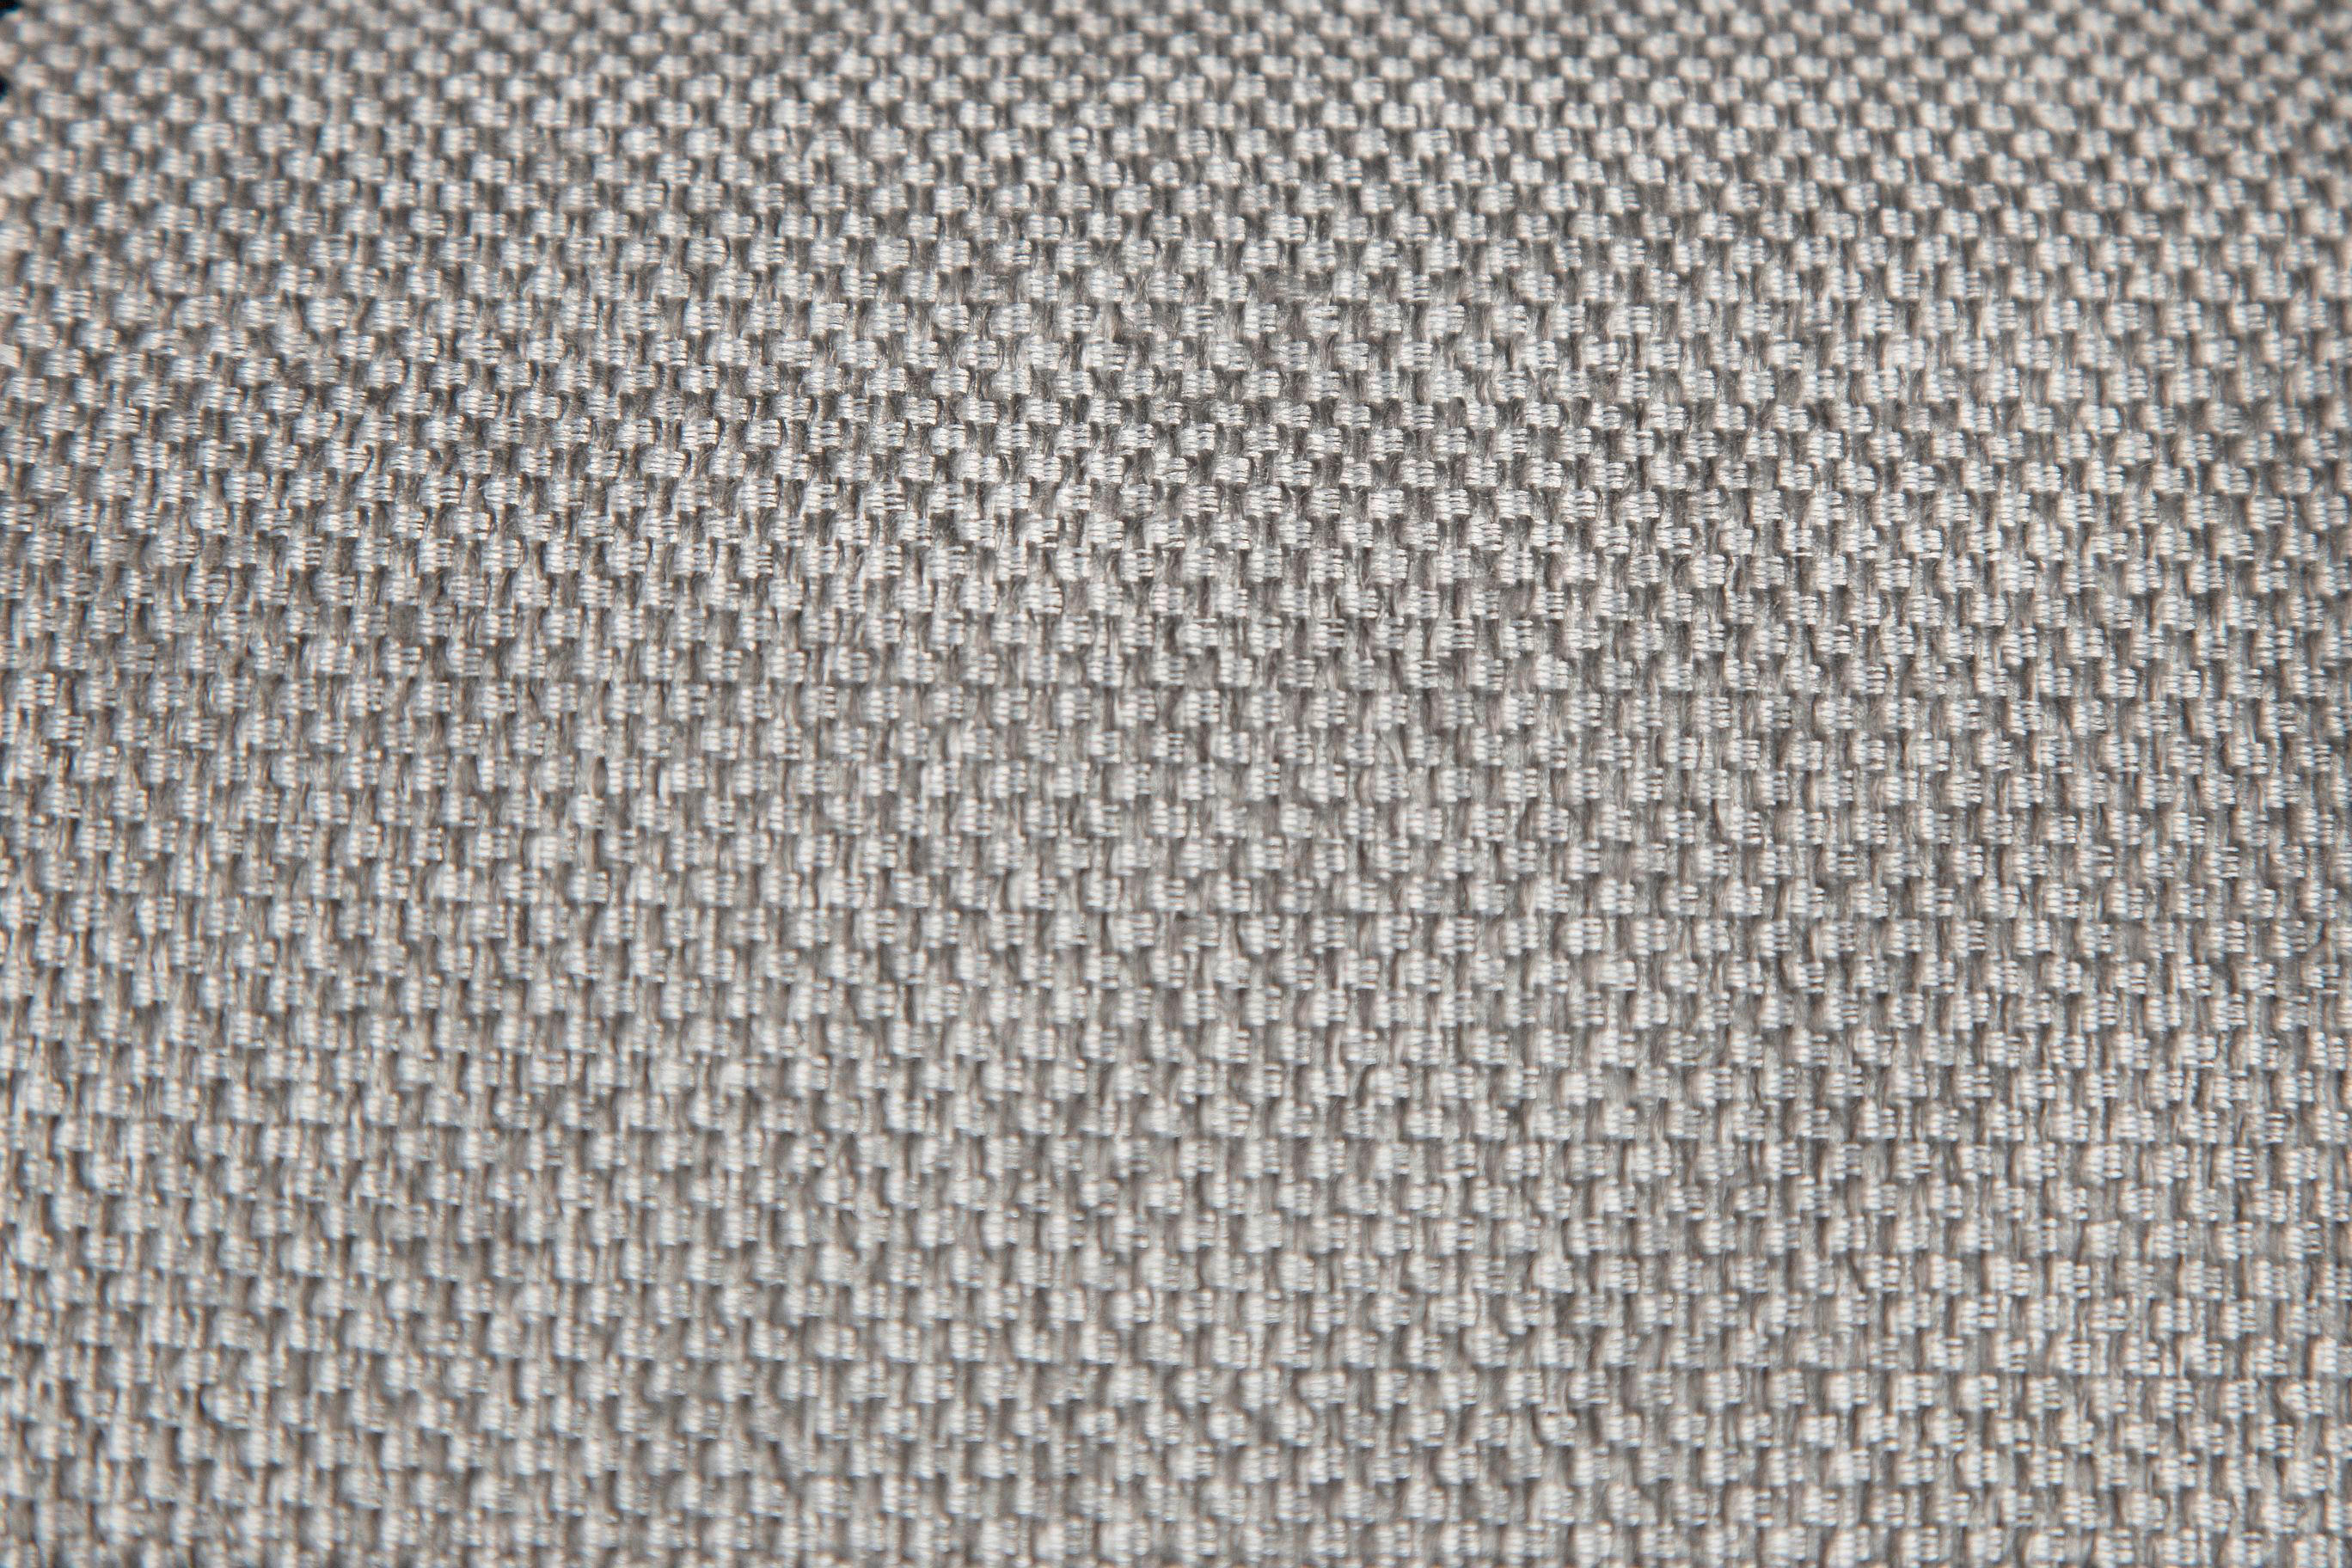 BOXBETT 180/200 cm  in Weiß, Hellgrau  - Hellgrau/Schwarz, KONVENTIONELL, Holz/Textil (180/200cm) - Boxxx